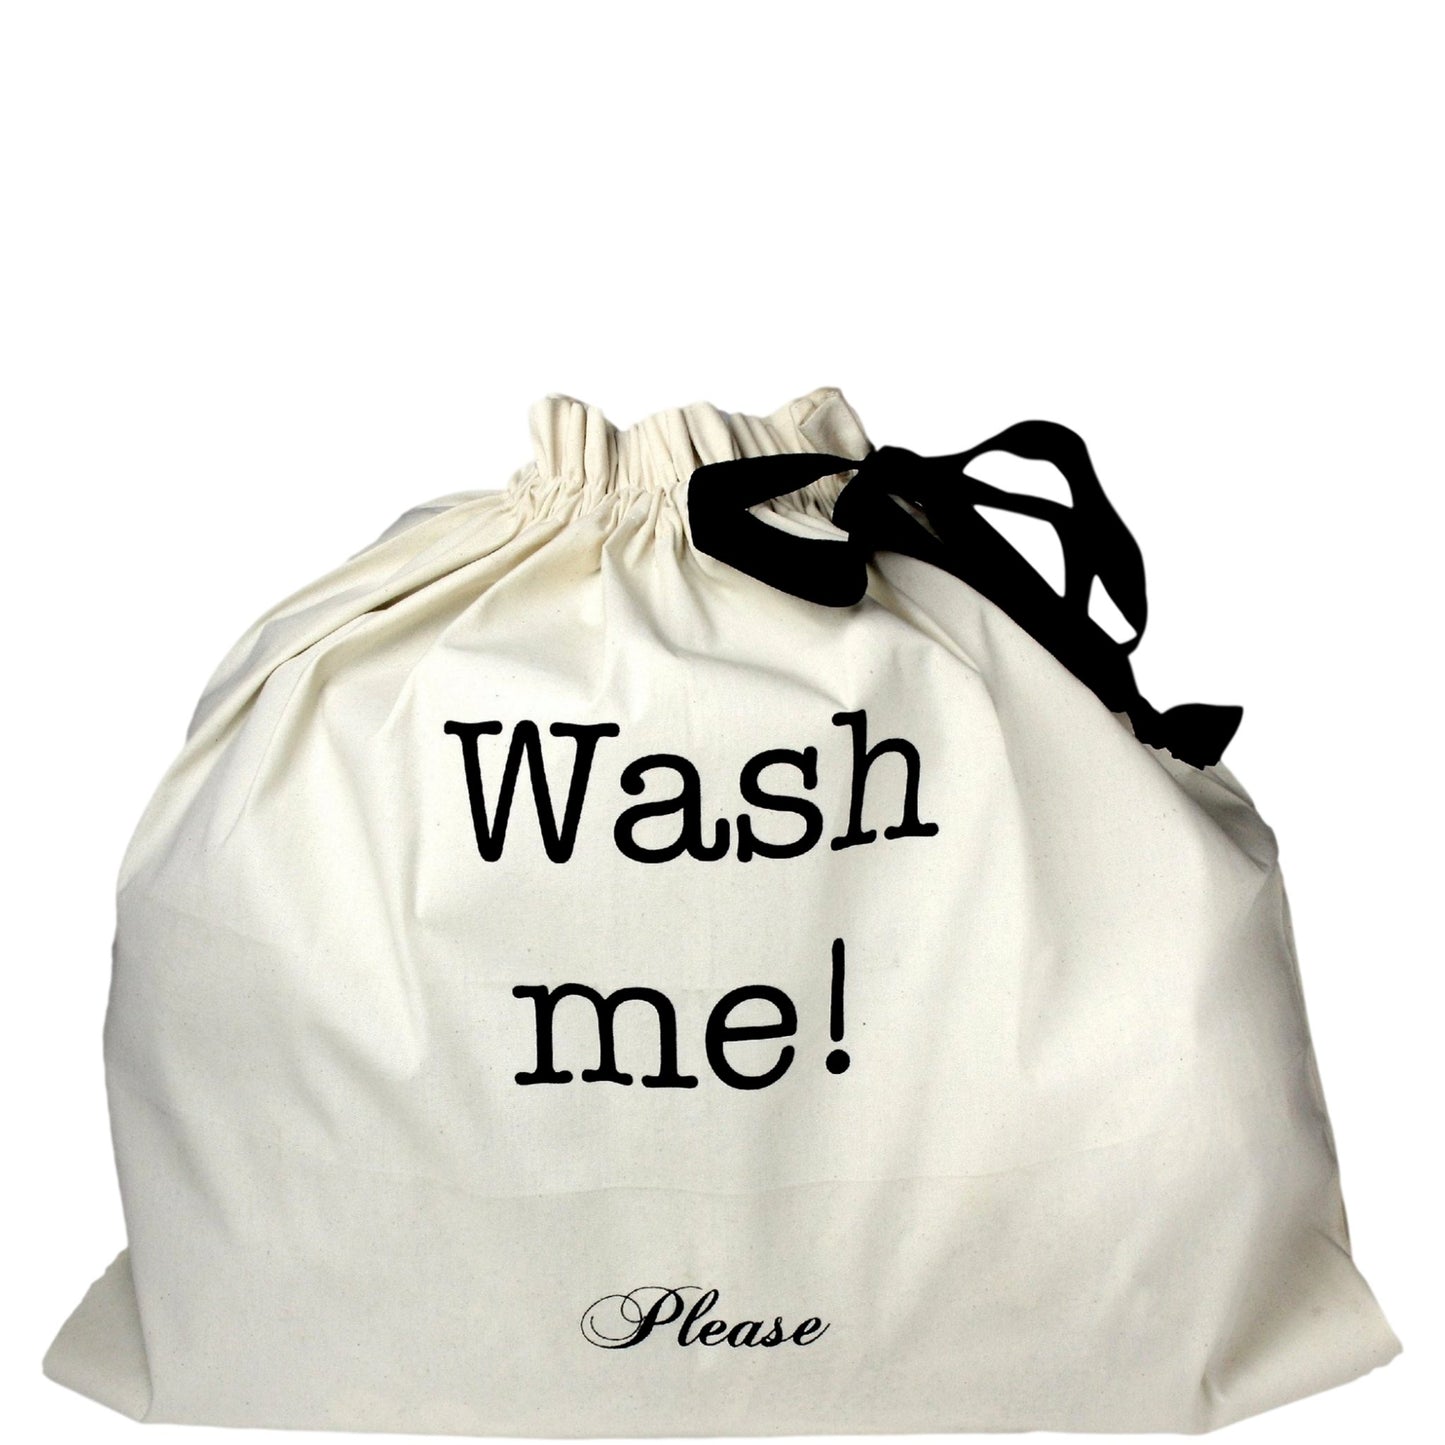 Grand sac à linge avec "Wash me" imprimé sur le devant.